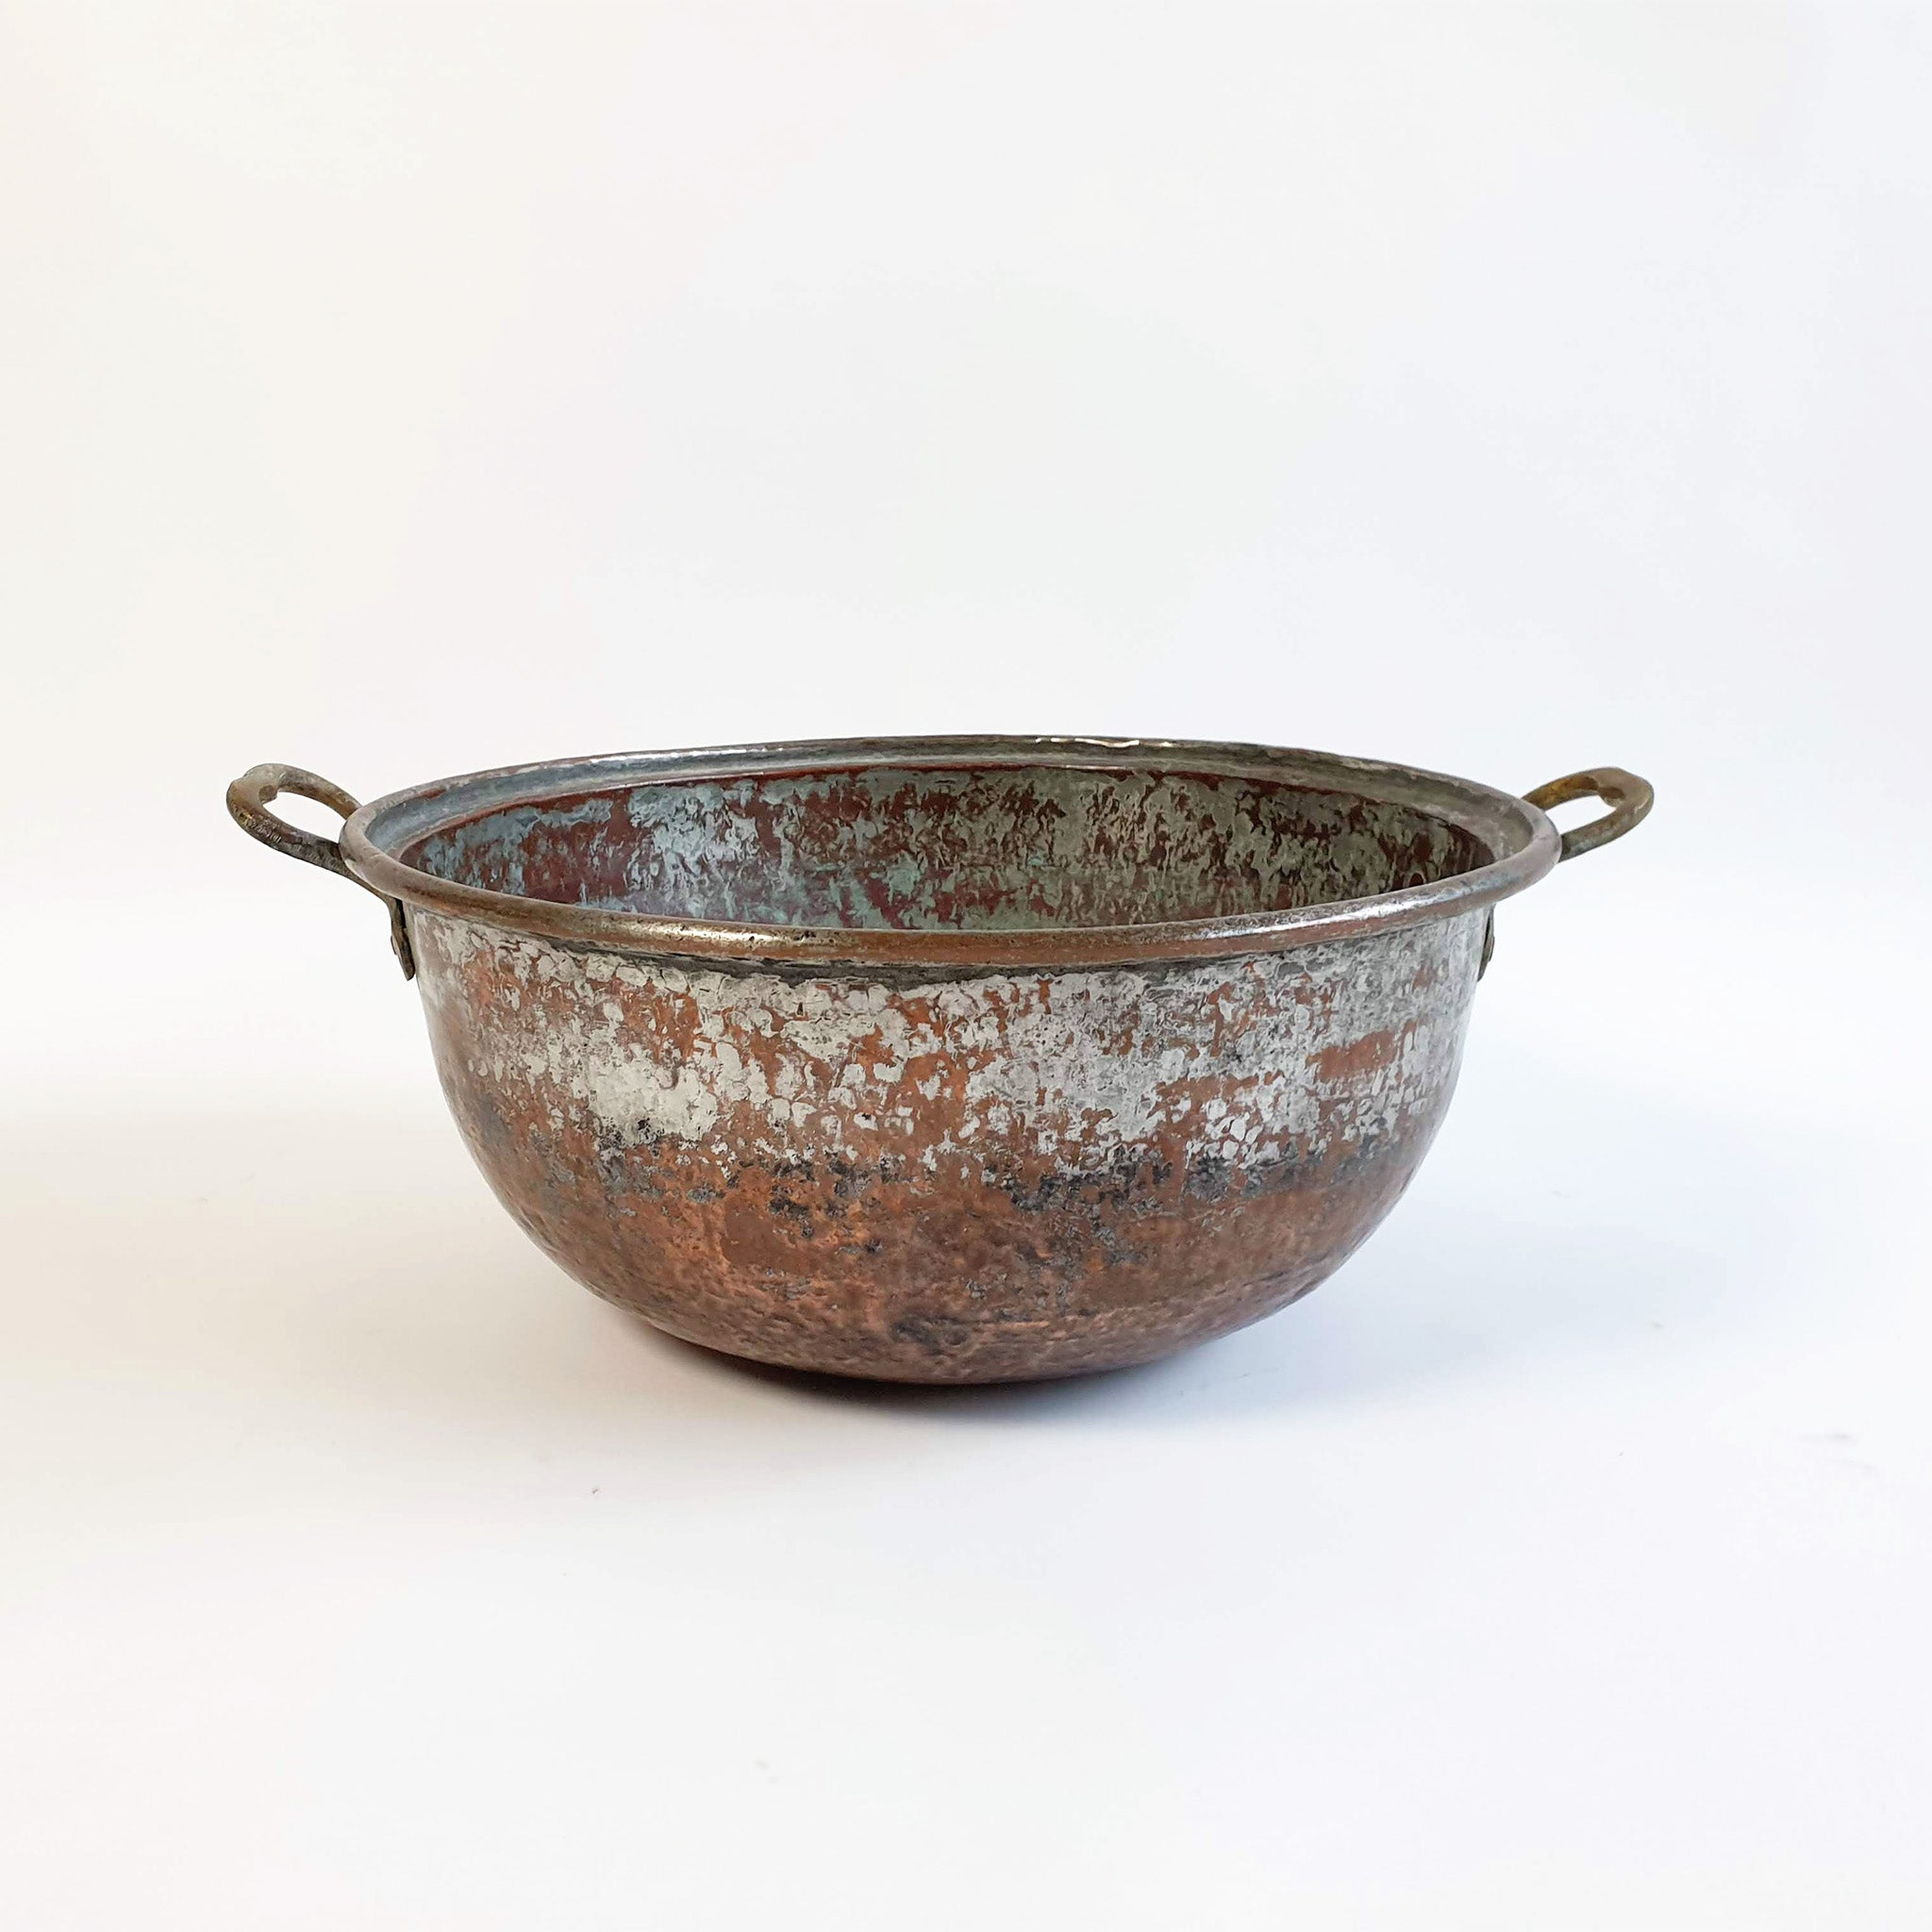 Antique Italian copper vat (1858473426979)